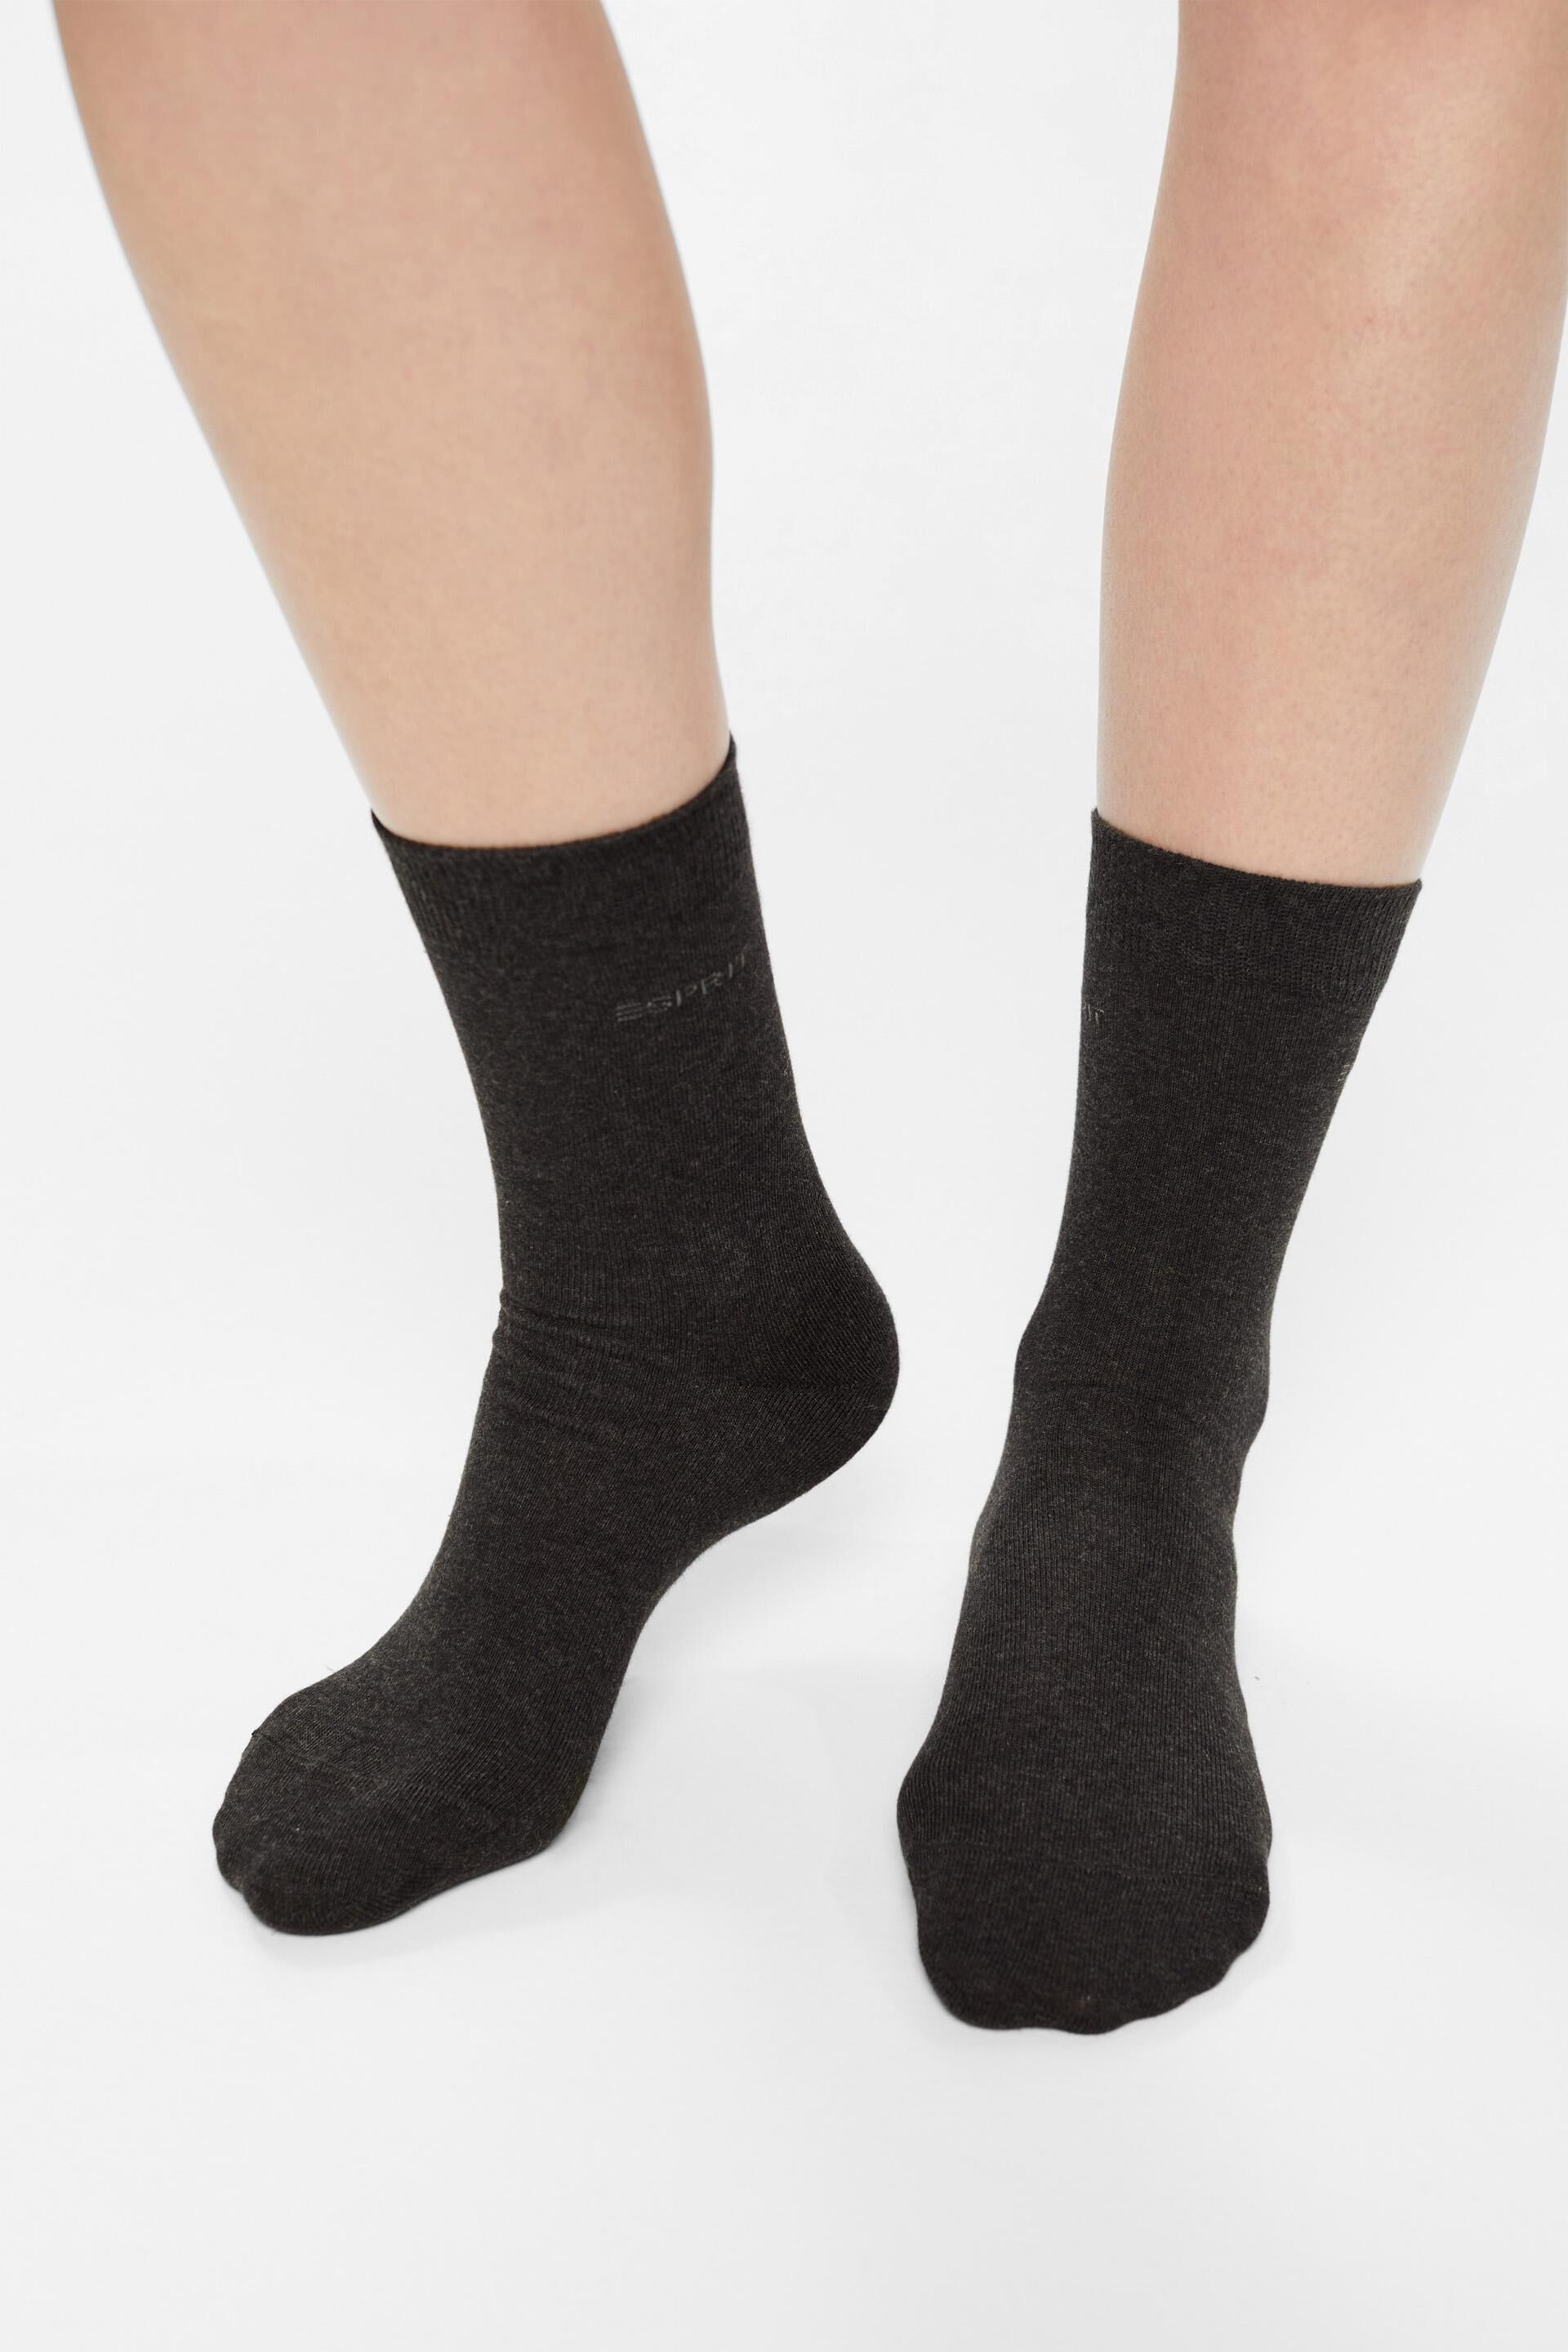 Esprit Online Store 5er-Pack einfarbige aus Socken Bio-Baumwolle